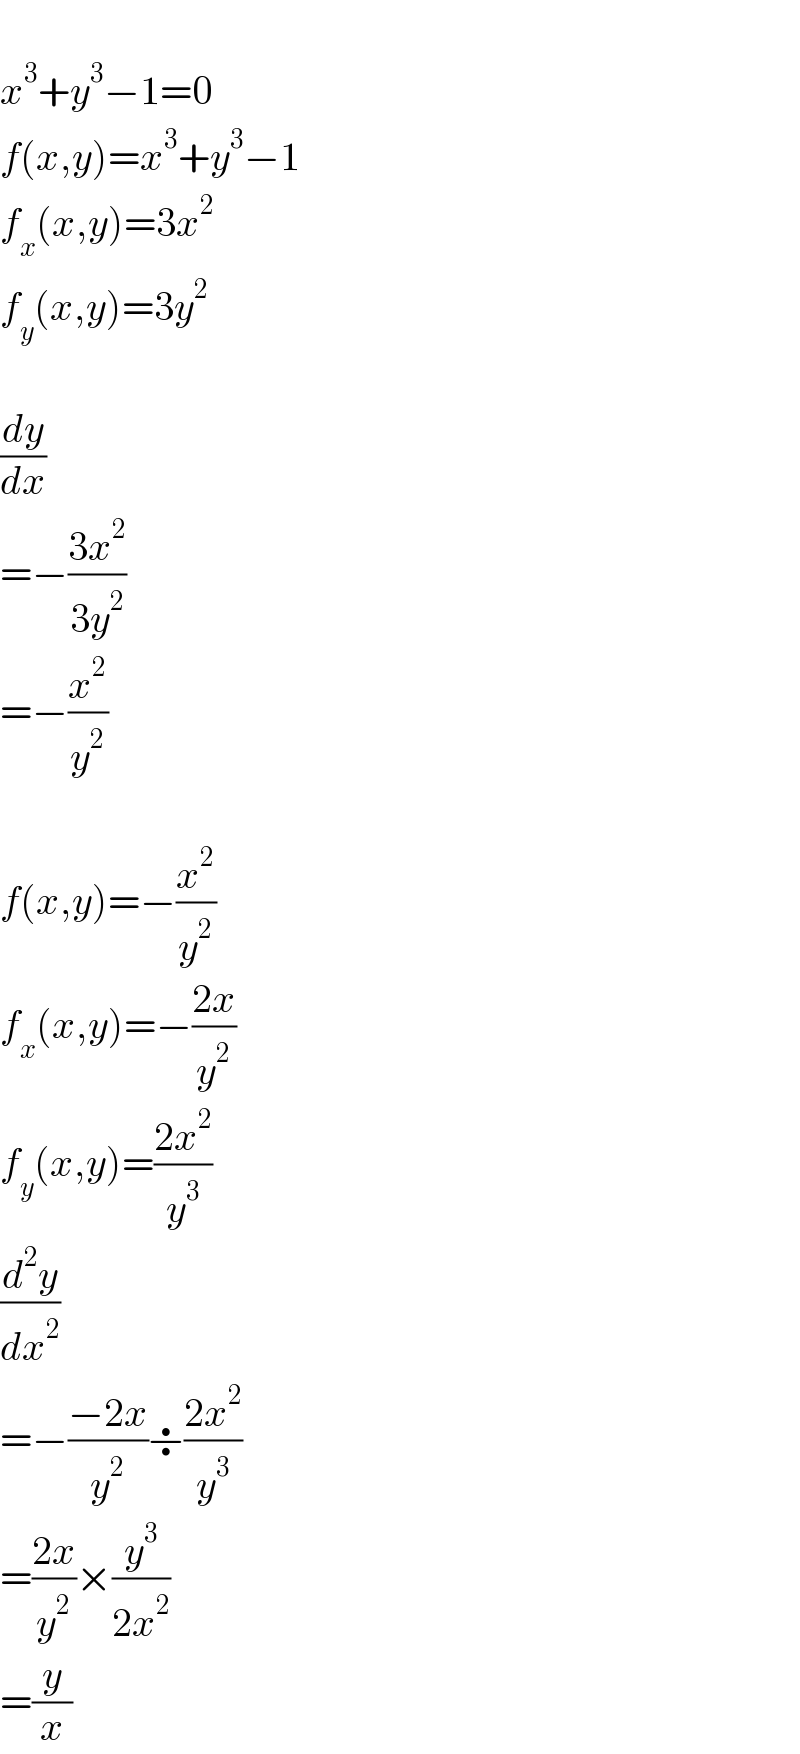   x^3 +y^3 −1=0  f(x,y)=x^3 +y^3 −1  f_x (x,y)=3x^2   f_y (x,y)=3y^2     (dy/dx)  =−((3x^2 )/(3y^2 ))  =−(x^2 /y^2 )    f(x,y)=−(x^2 /y^2 )  f_x (x,y)=−((2x)/y^2 )  f_y (x,y)=((2x^2 )/y^3 )  (d^2 y/dx^2 )  =−((−2x)/y^2 )÷((2x^2 )/y^3 )  =((2x)/y^2 )×(y^3 /(2x^2 ))  =(y/x)  